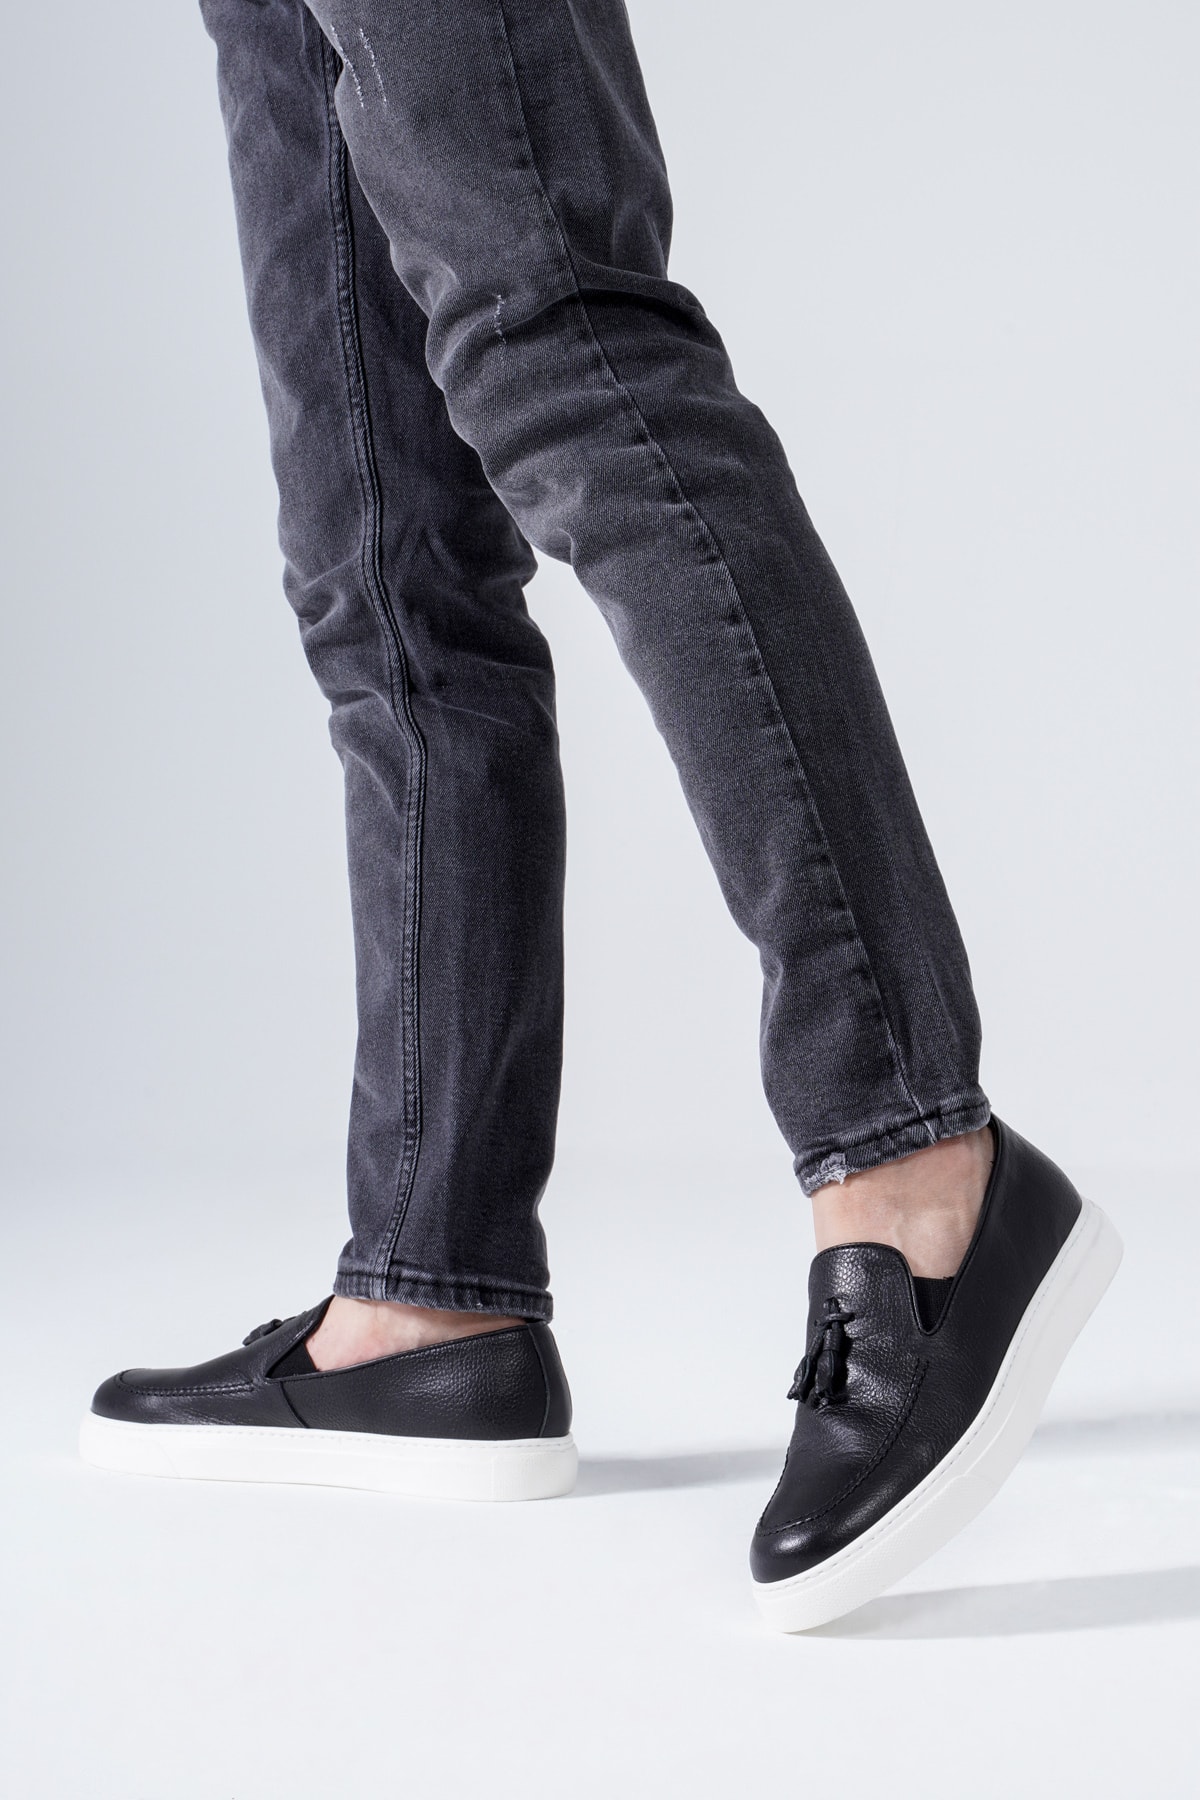 CZ London Hakiki Deri Erkek Loafer Spor Ayakkabı Sneaker Püskül Comfort Ped